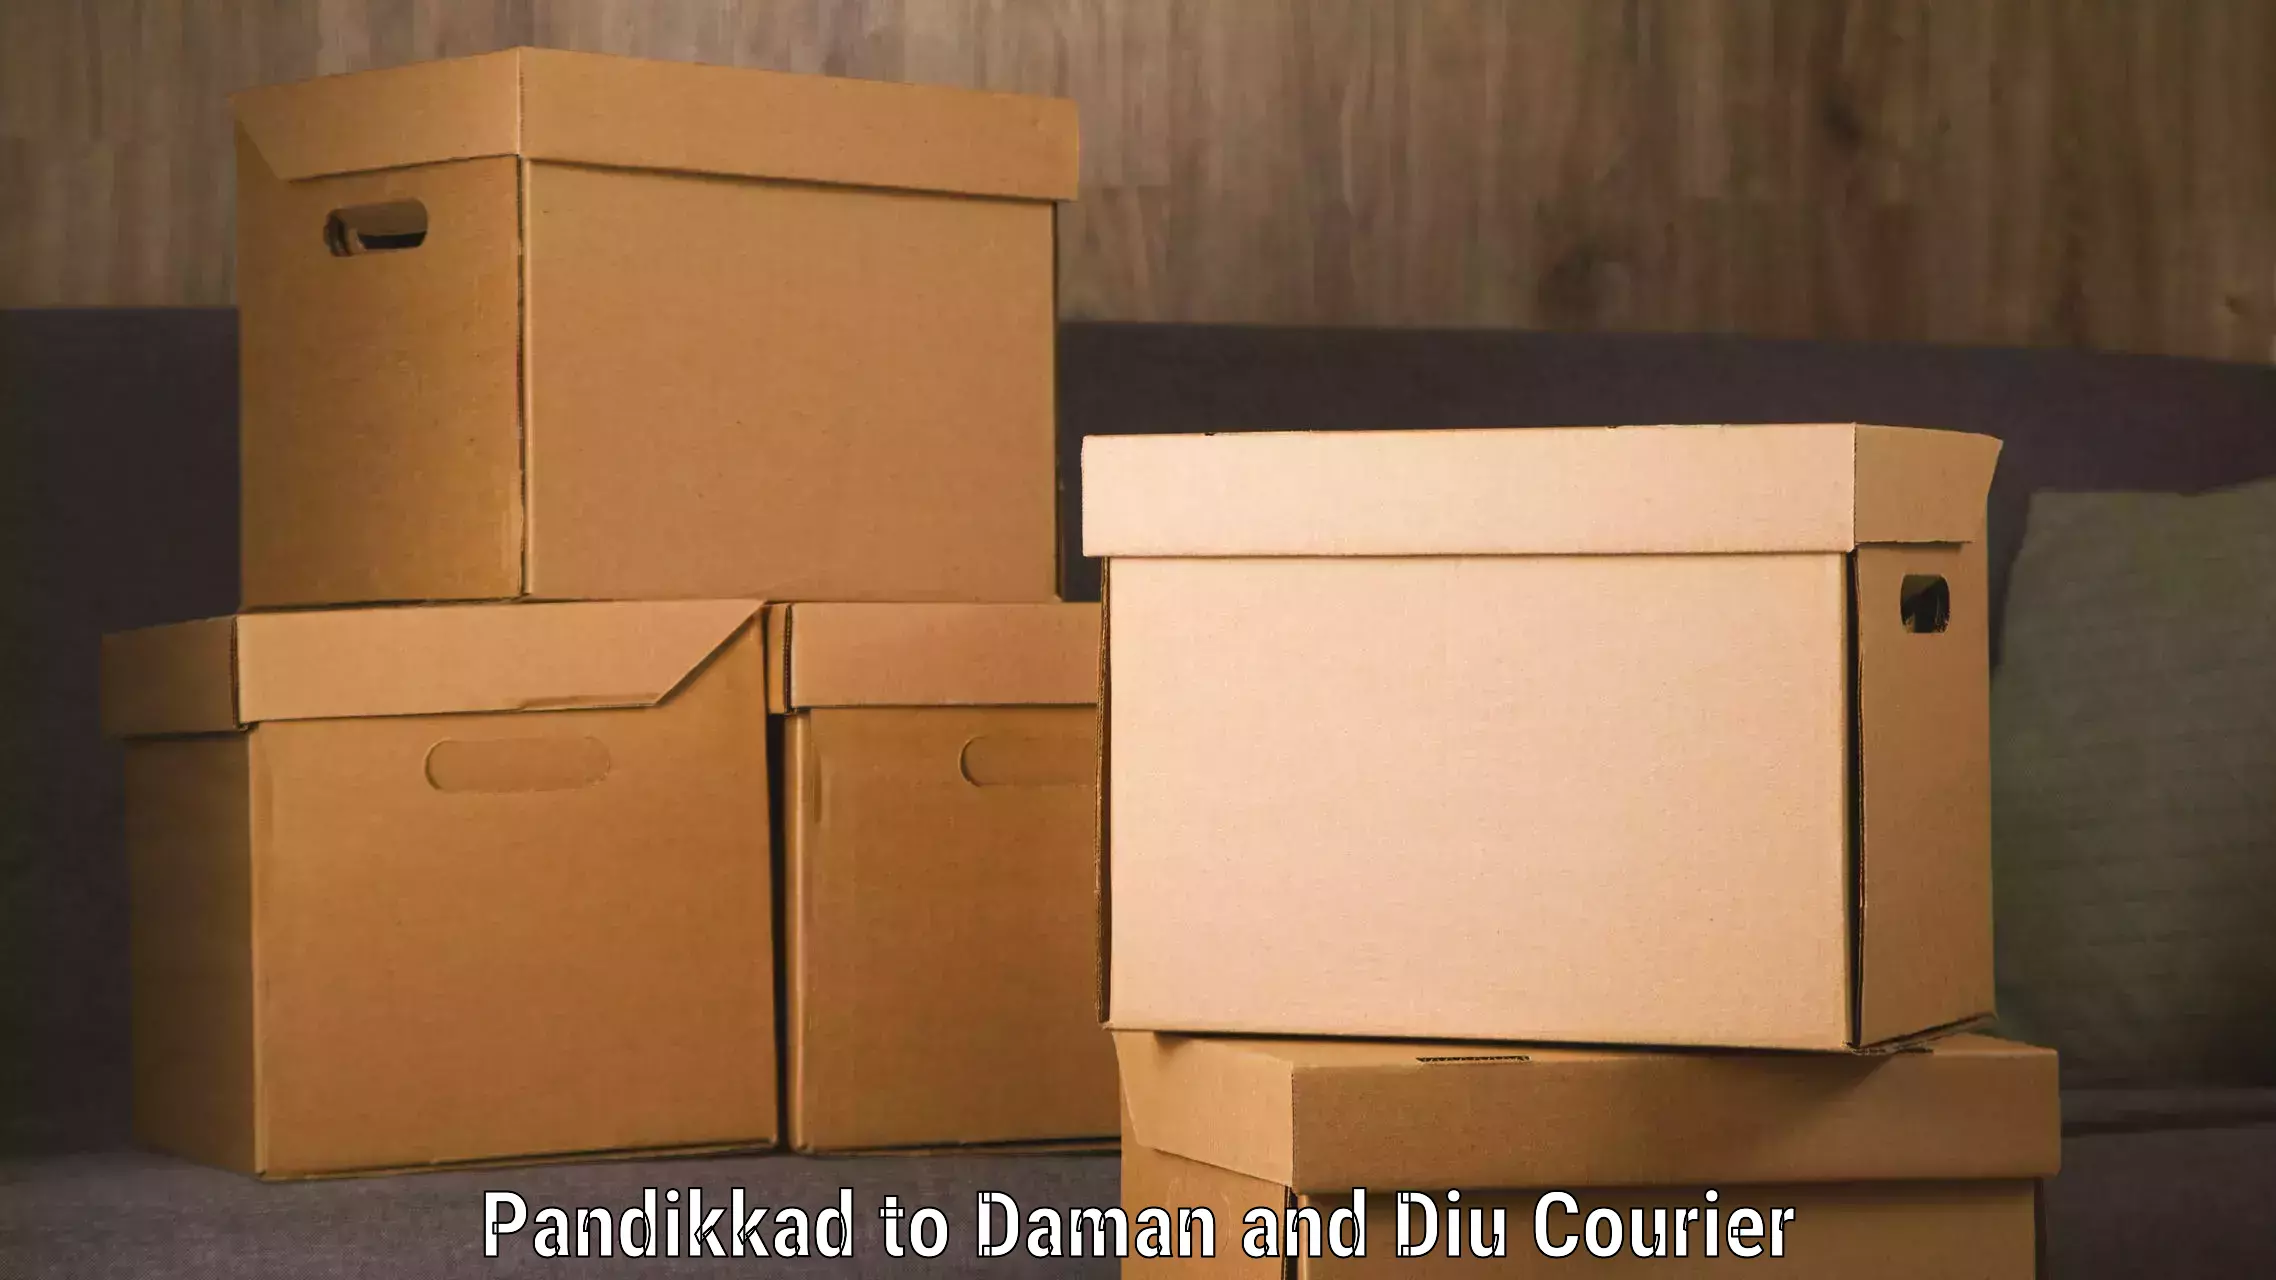 Automated shipping Pandikkad to Diu